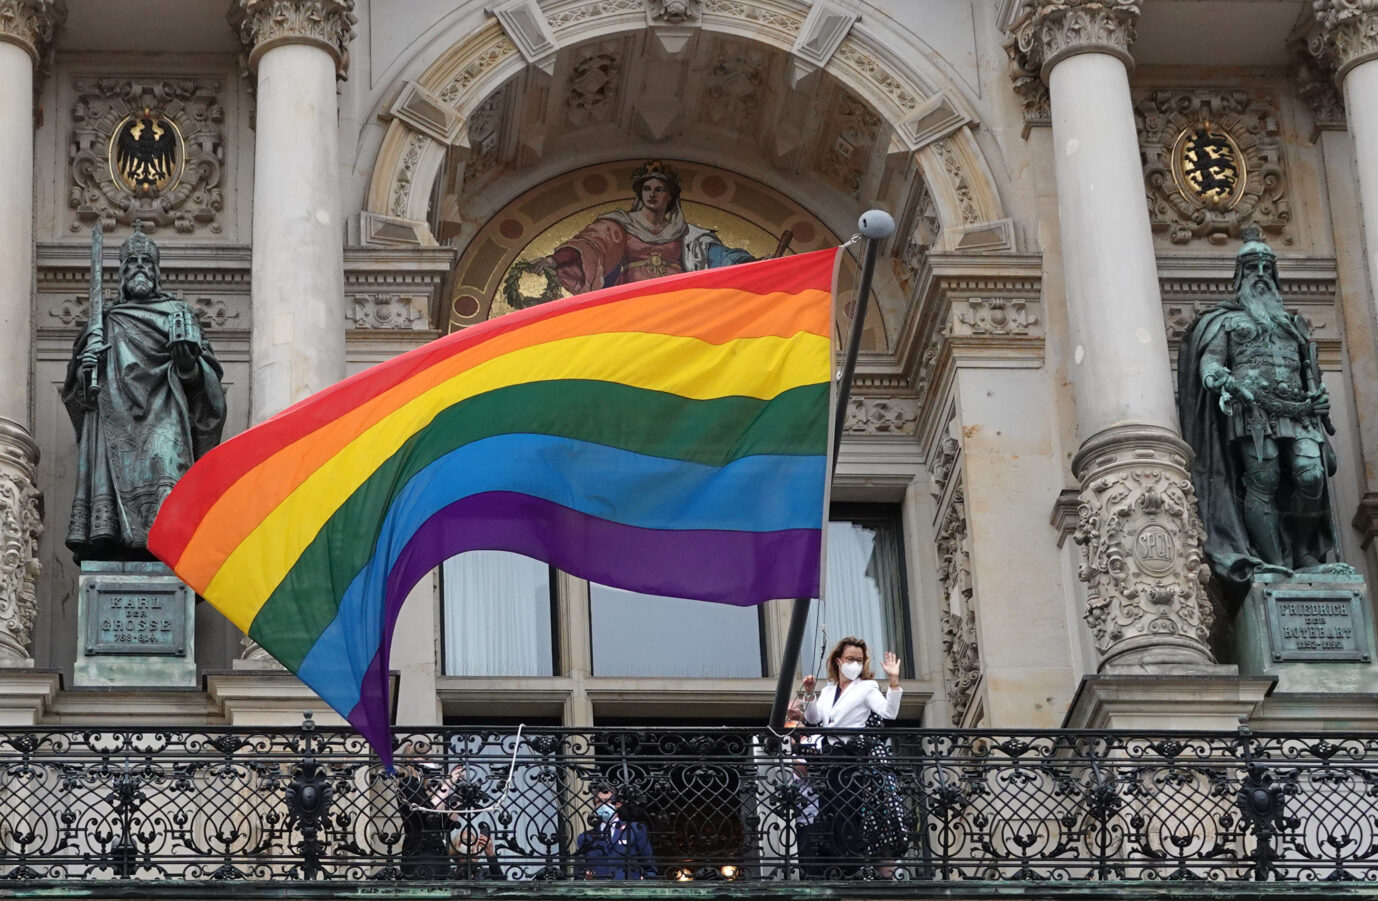 Regenbogenflagge am Rathausbalkon in Hamburg: Vielfalt ist mittlerweile Teil der Staatsdoktrin